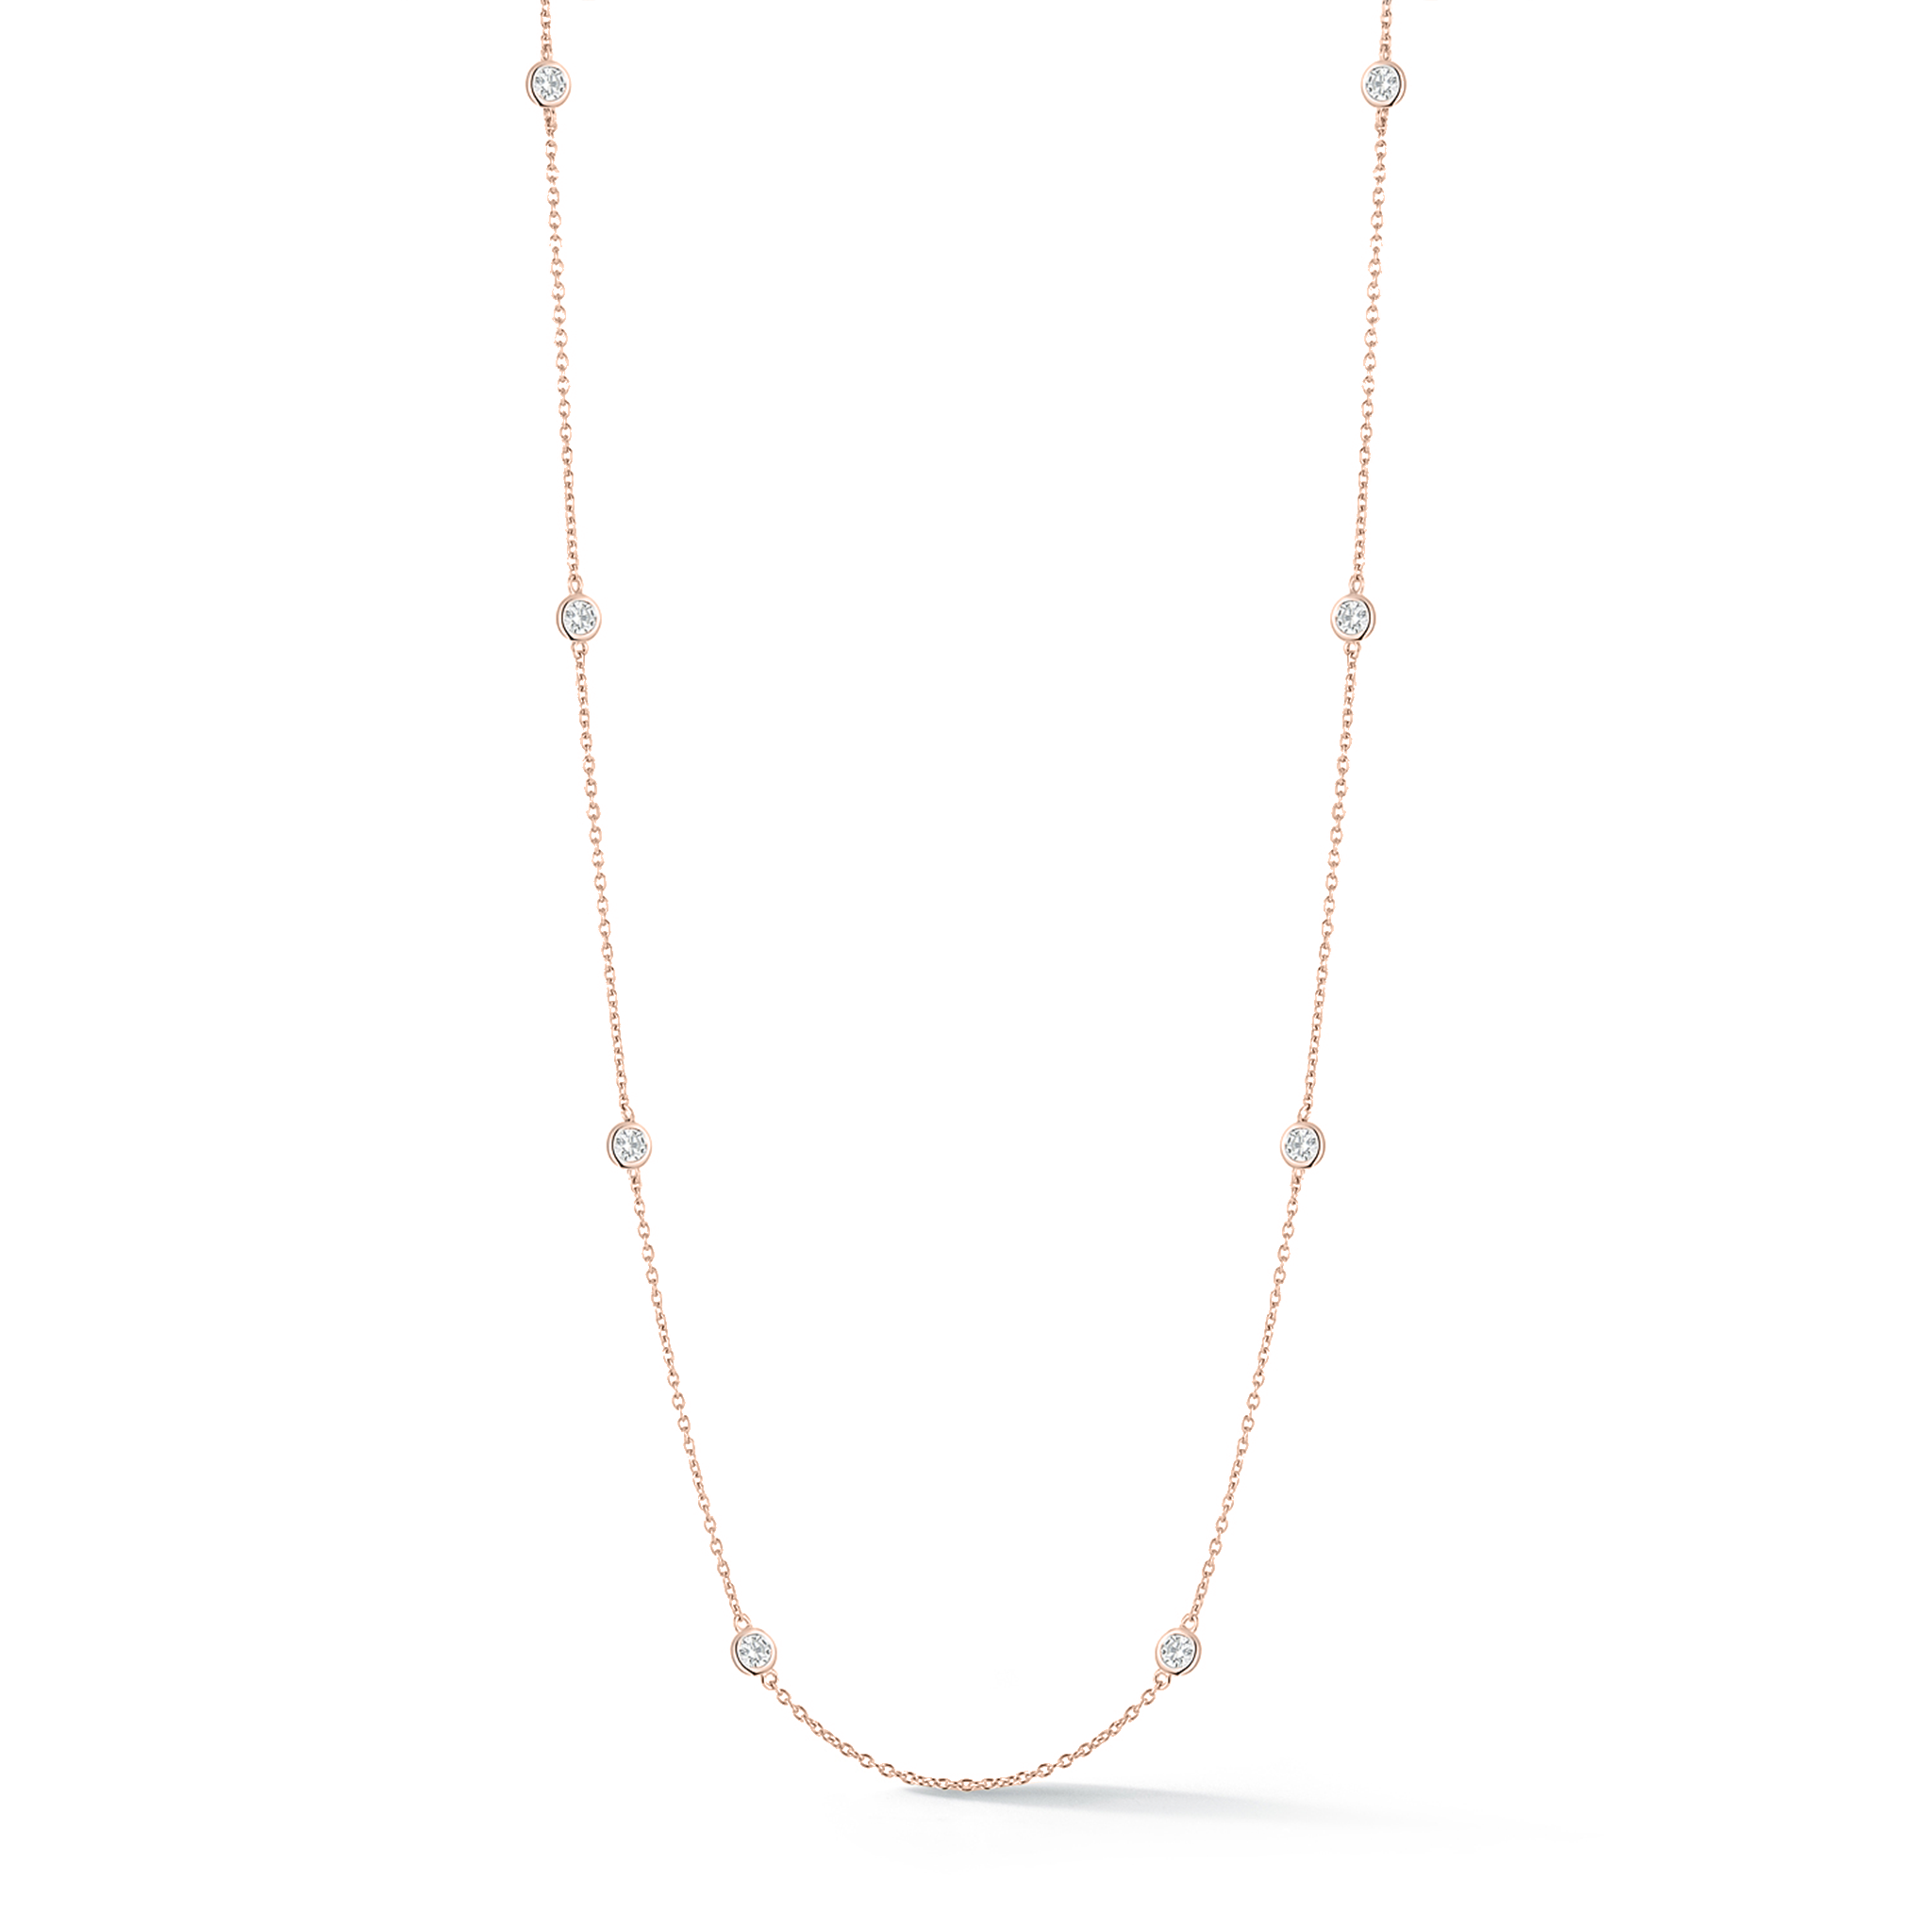 Fascia Intricate Diamond Necklace | Decent Diamond Necklace | CaratLane